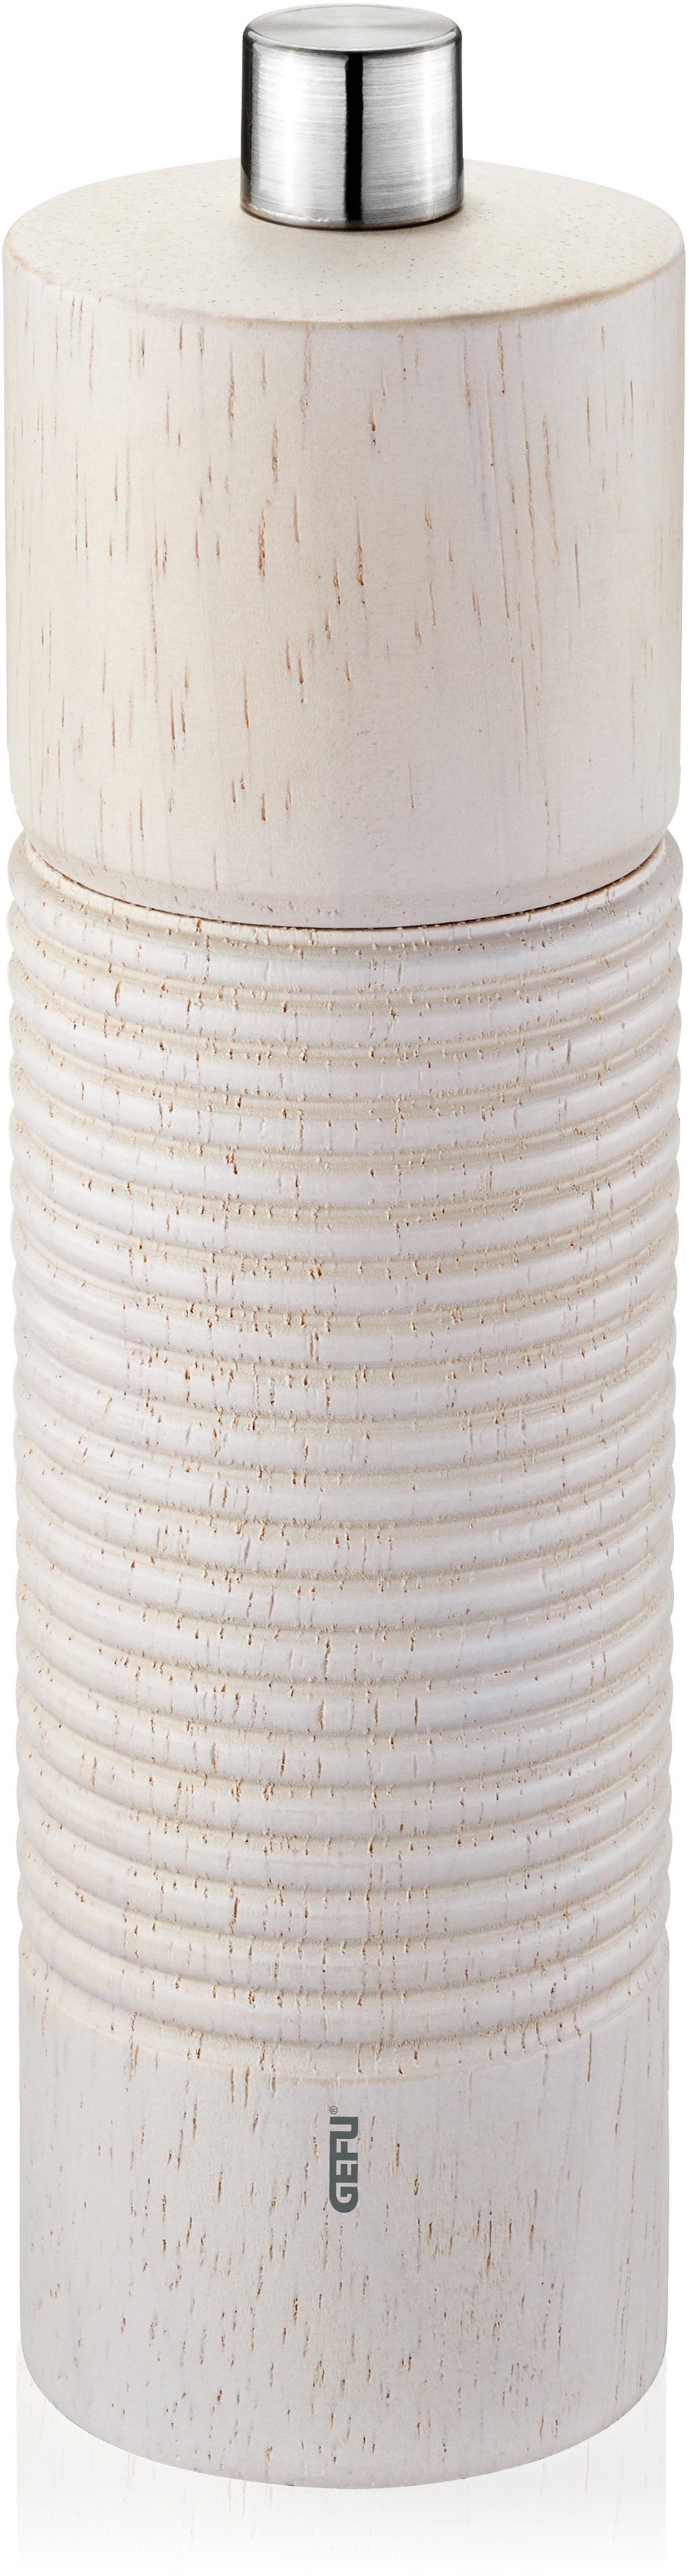 Top-Auswahl GEFU Salz-/Pfeffermühle TEDORO manuell, Keramikmahlwerk einstellbares stufenlos silberfarben/weiß